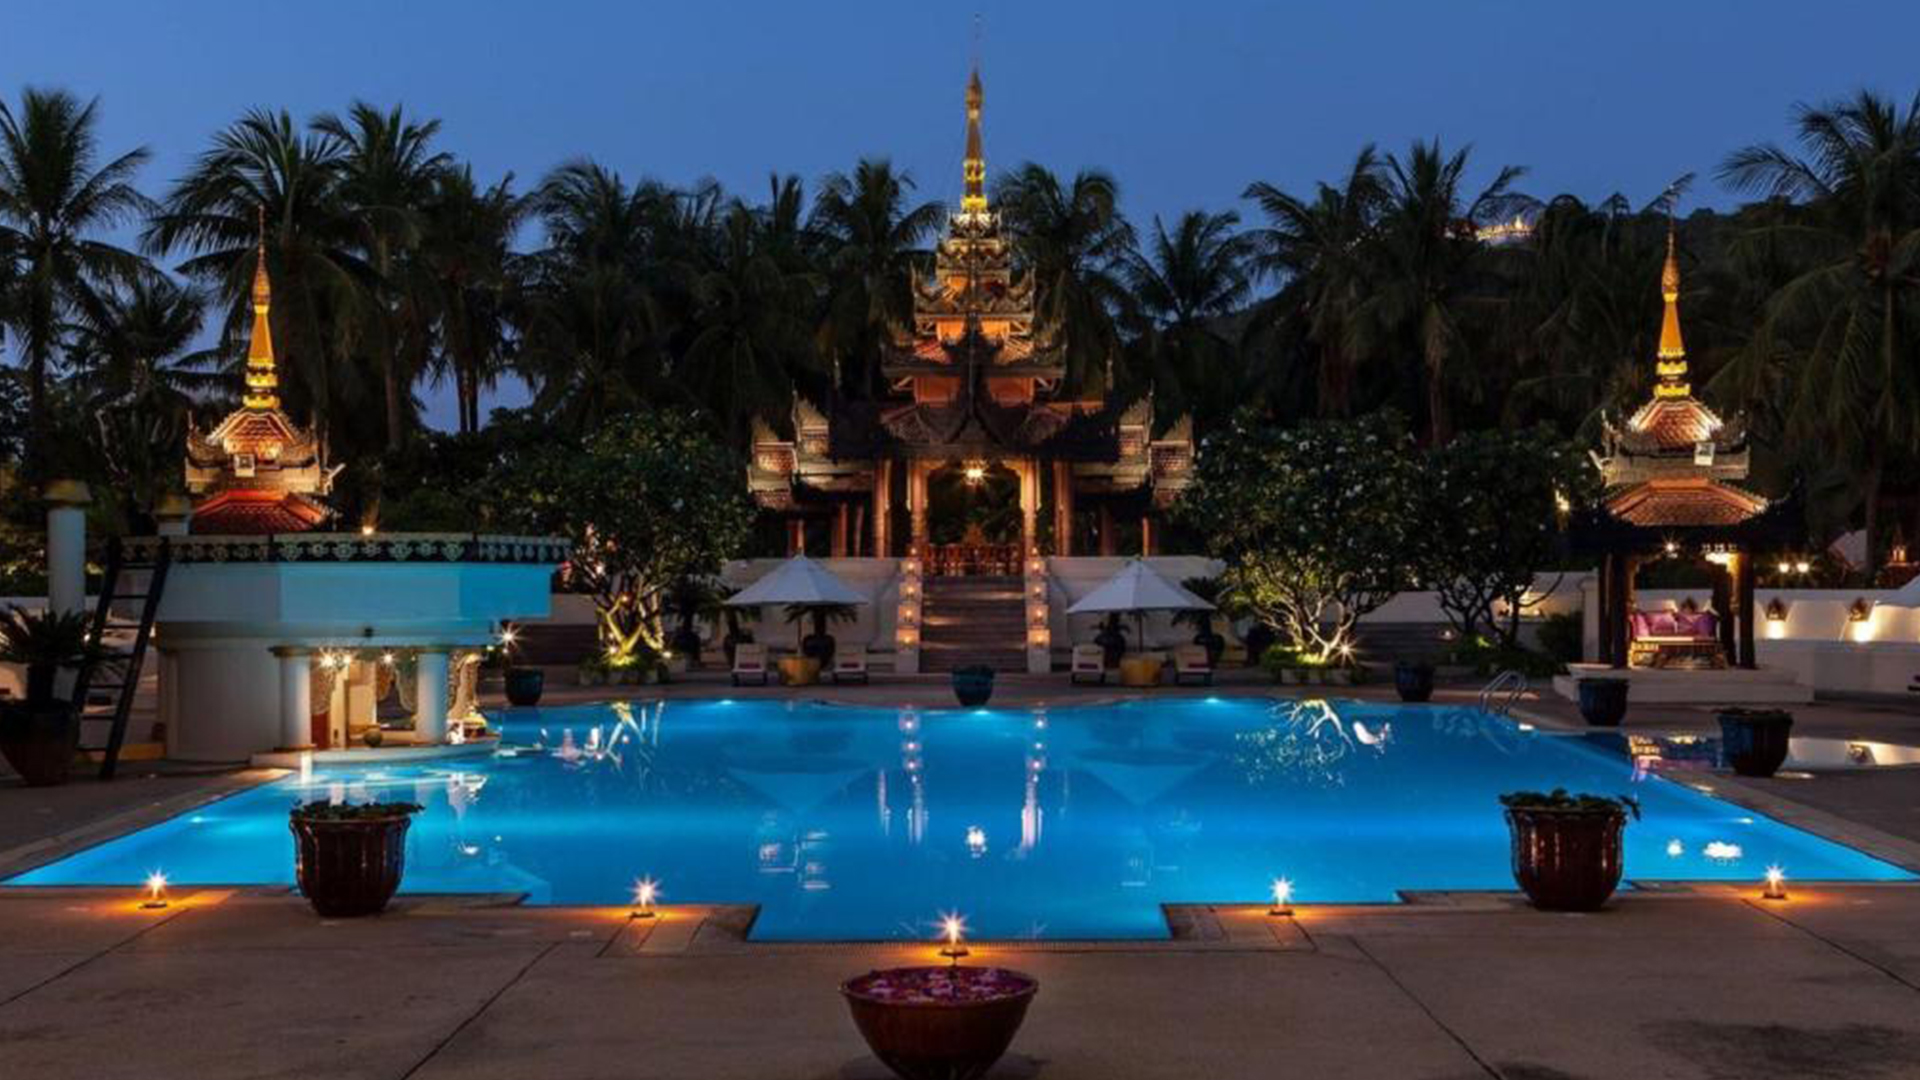 Mercure Hotel, Mandalay Bay